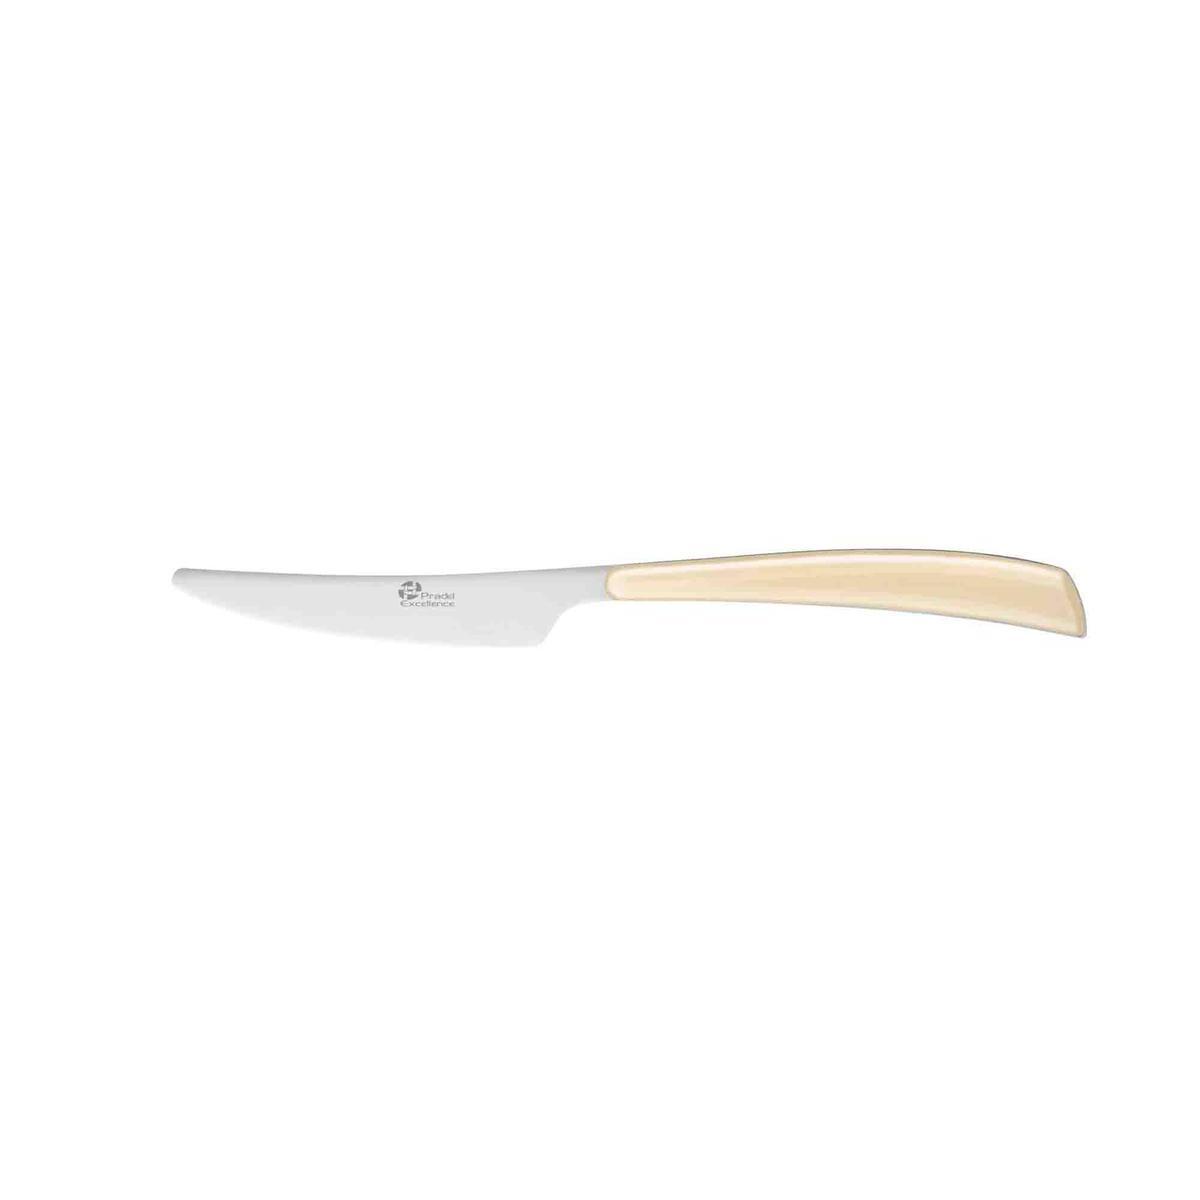 Couteau élégance beige - Acier inoxydable - 23,4 cm - Beige